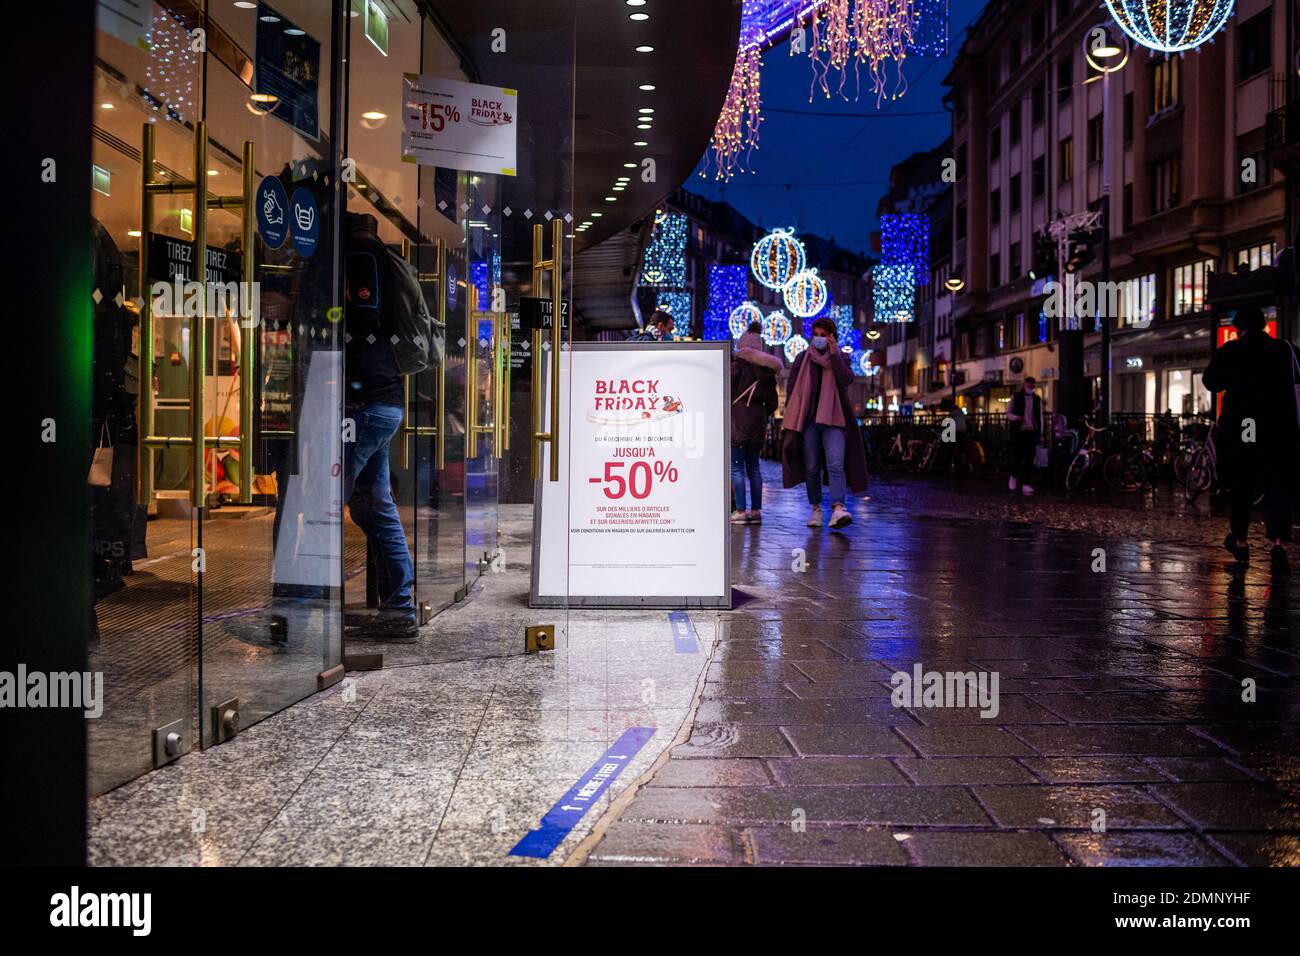 Strasburgo, Francia - 4 dicembre 2020: Folla di persone che entrano nel grande centro commerciale di lusso di notte con iscrizione sul banner d'ingresso - venerdì nero fino al 50% di sconto - natale decorato strada in background Foto Stock